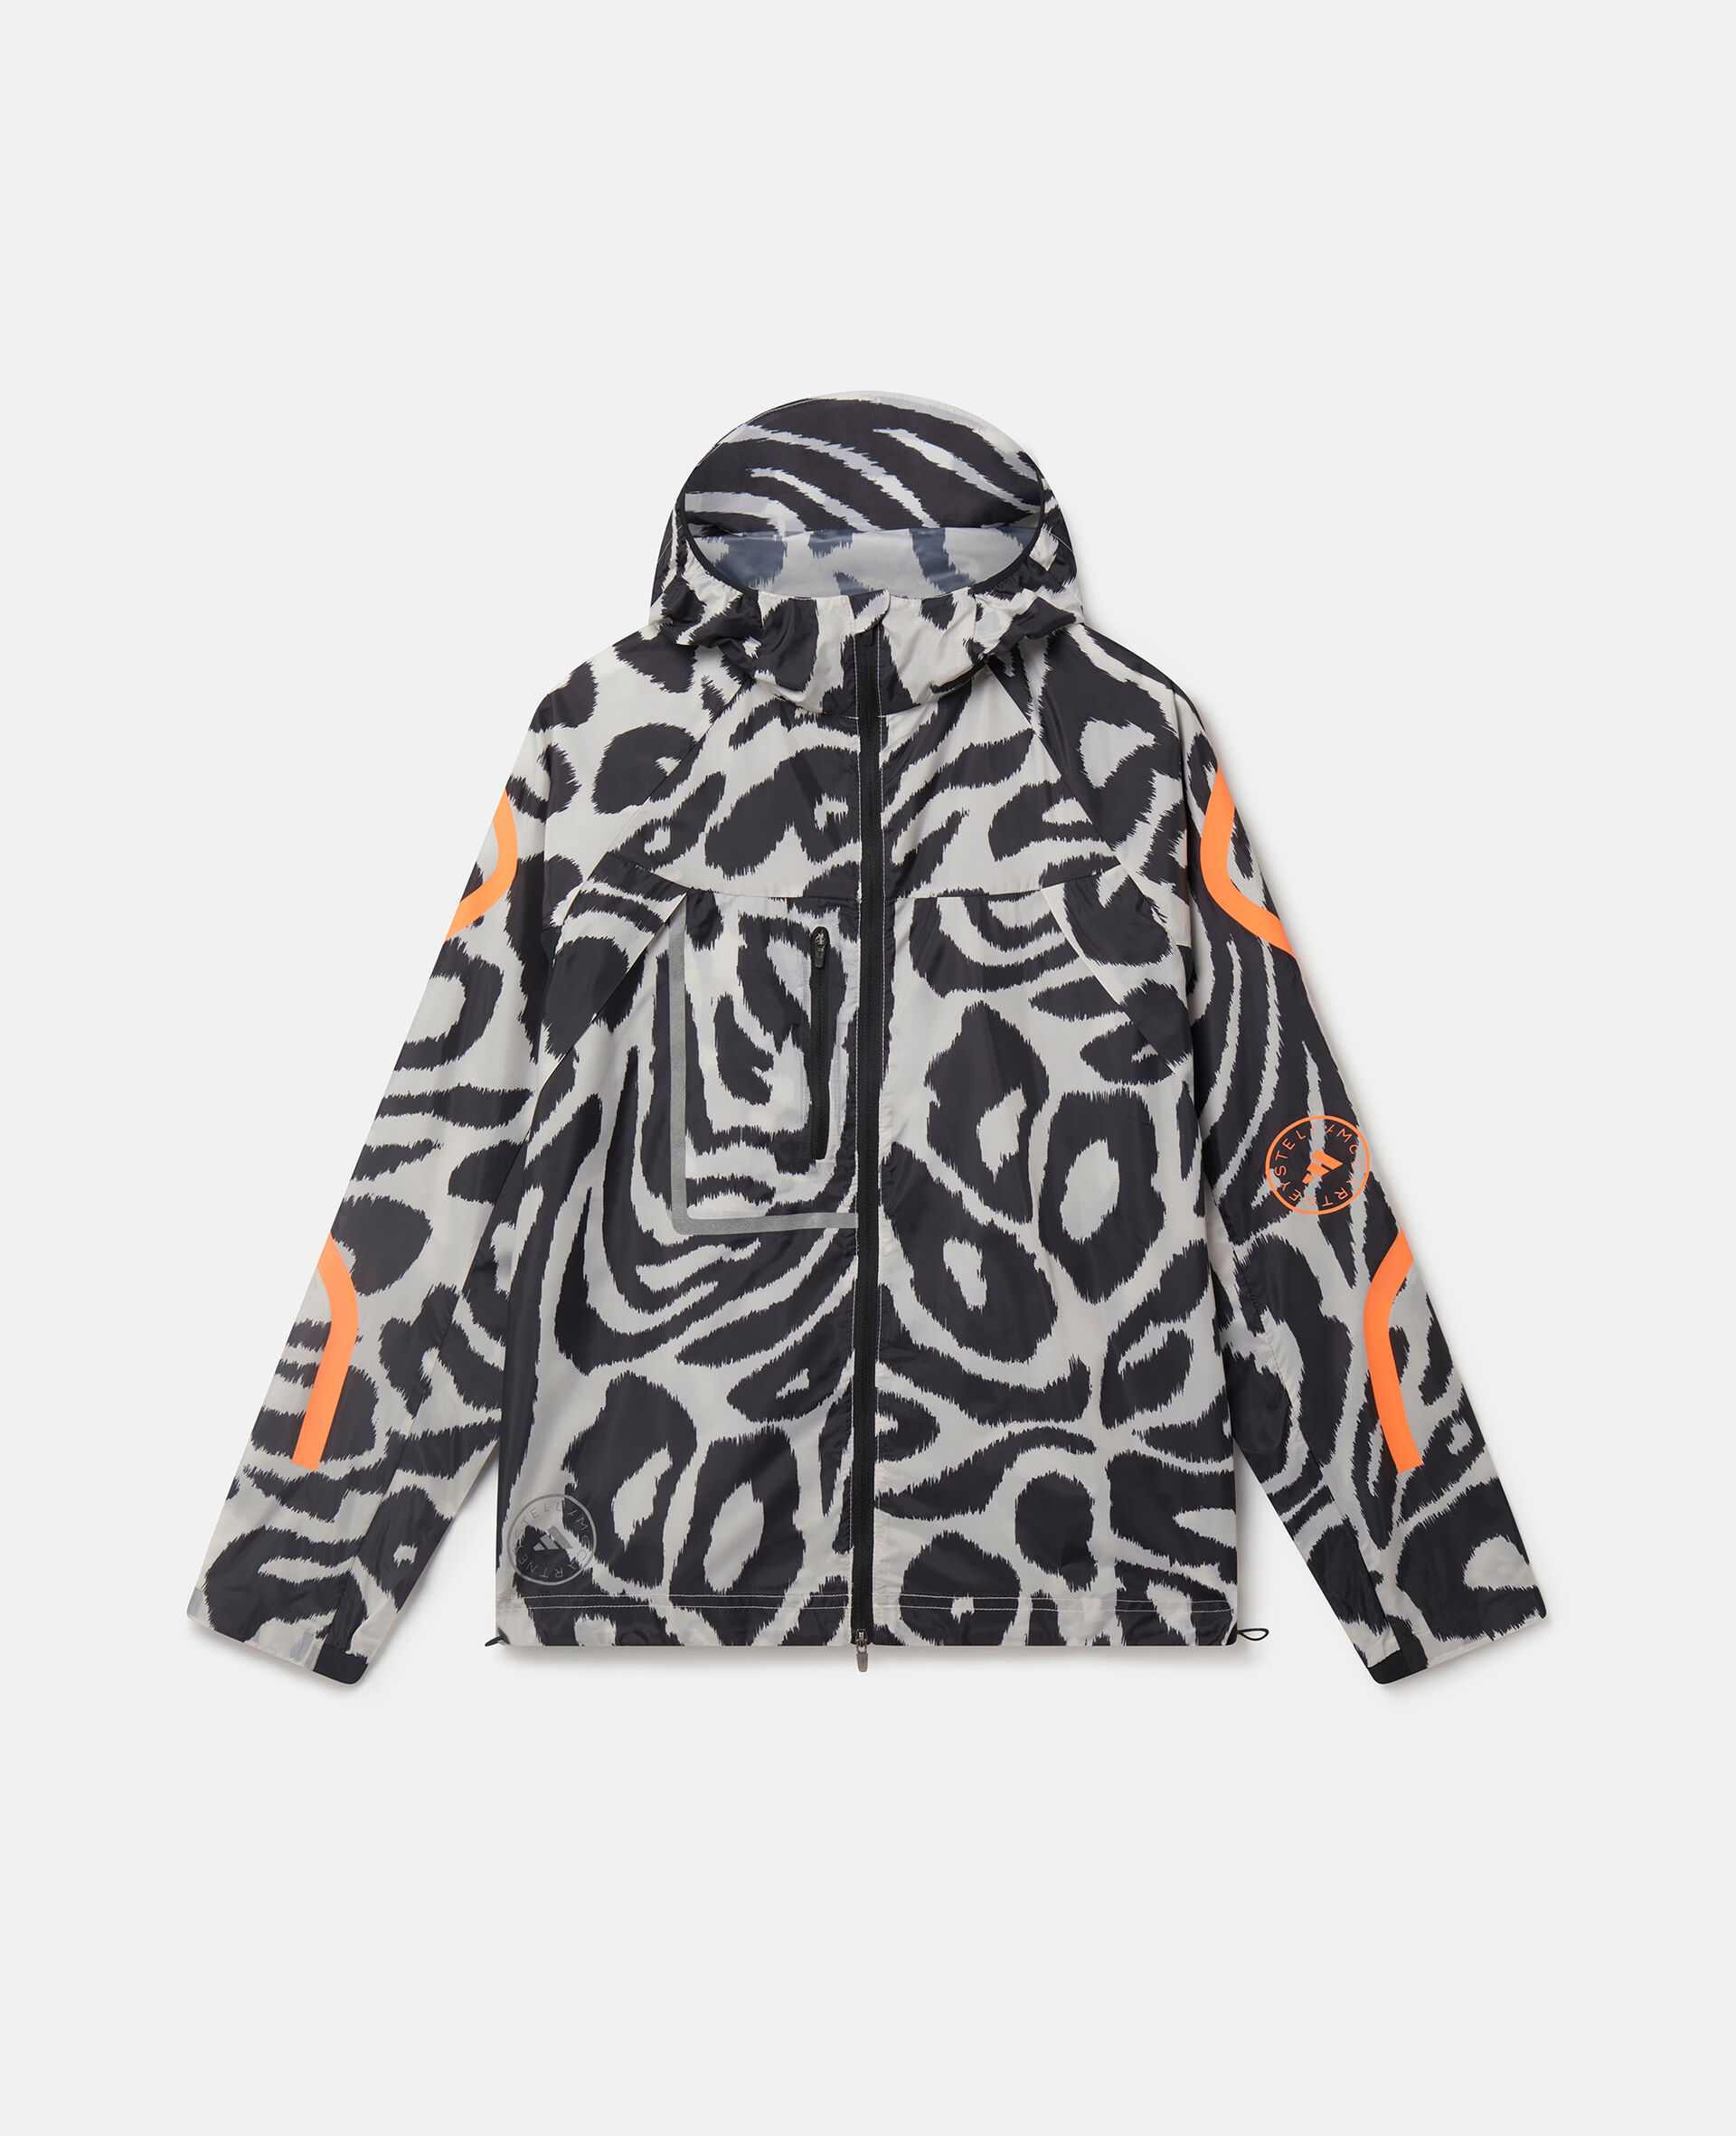 TruePace Leopard Print Running Jacket-Multicoloured-medium